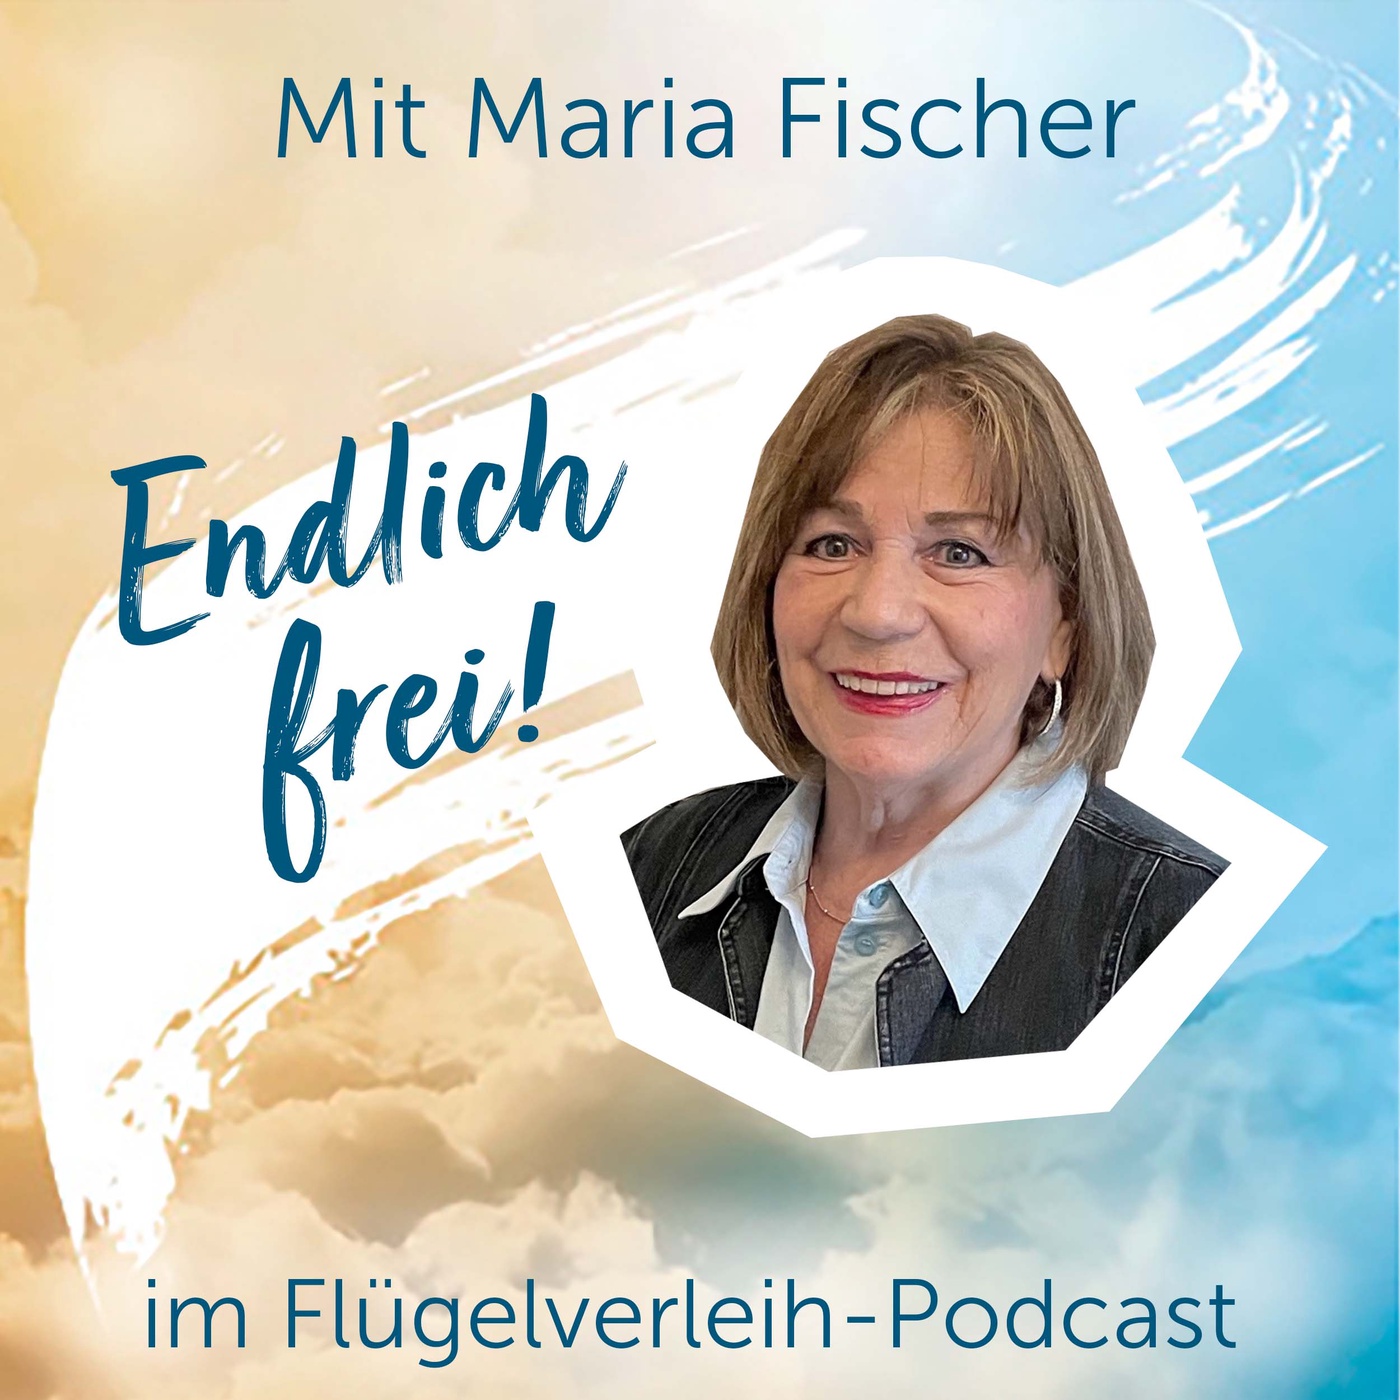 Endlich frei! - mit Maria Fischer